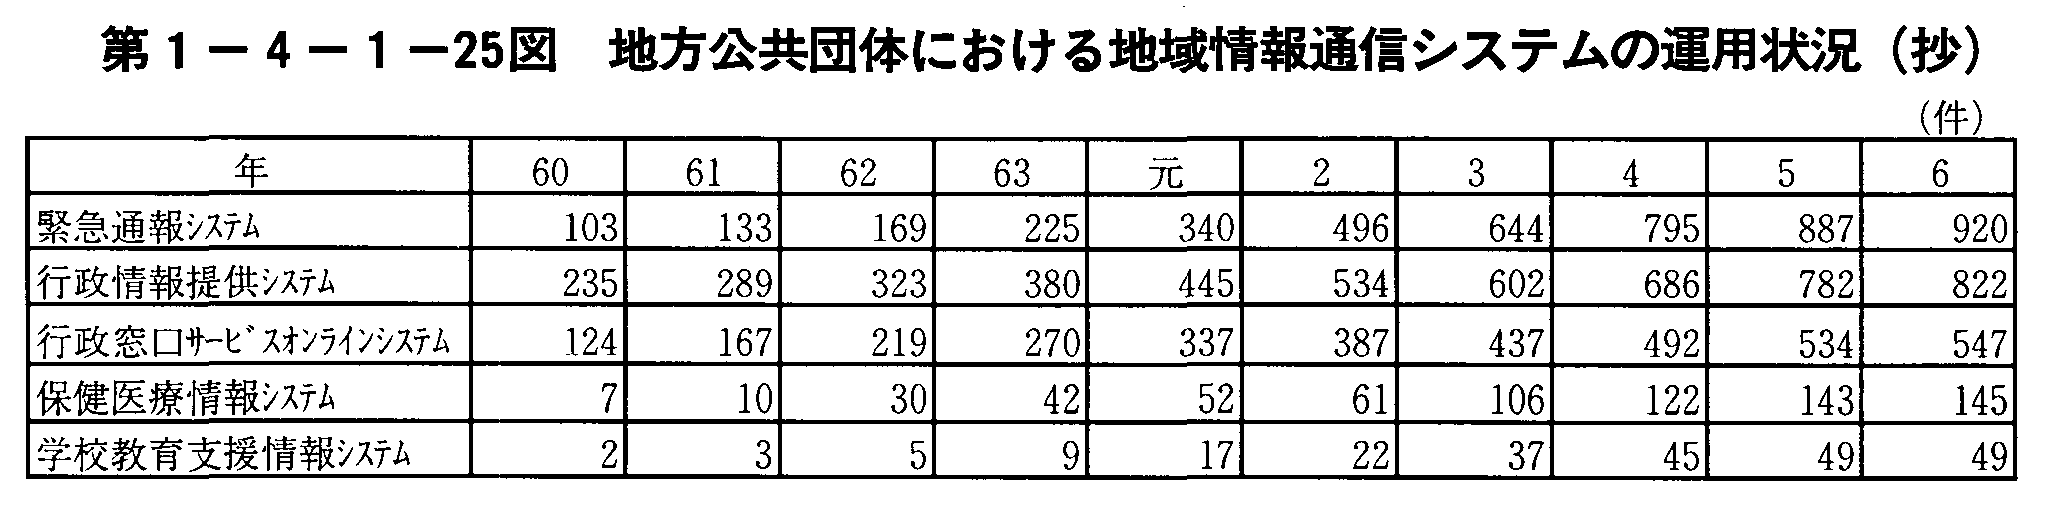 1-4-1-25} nĉɂnʐMVXẻ^p()